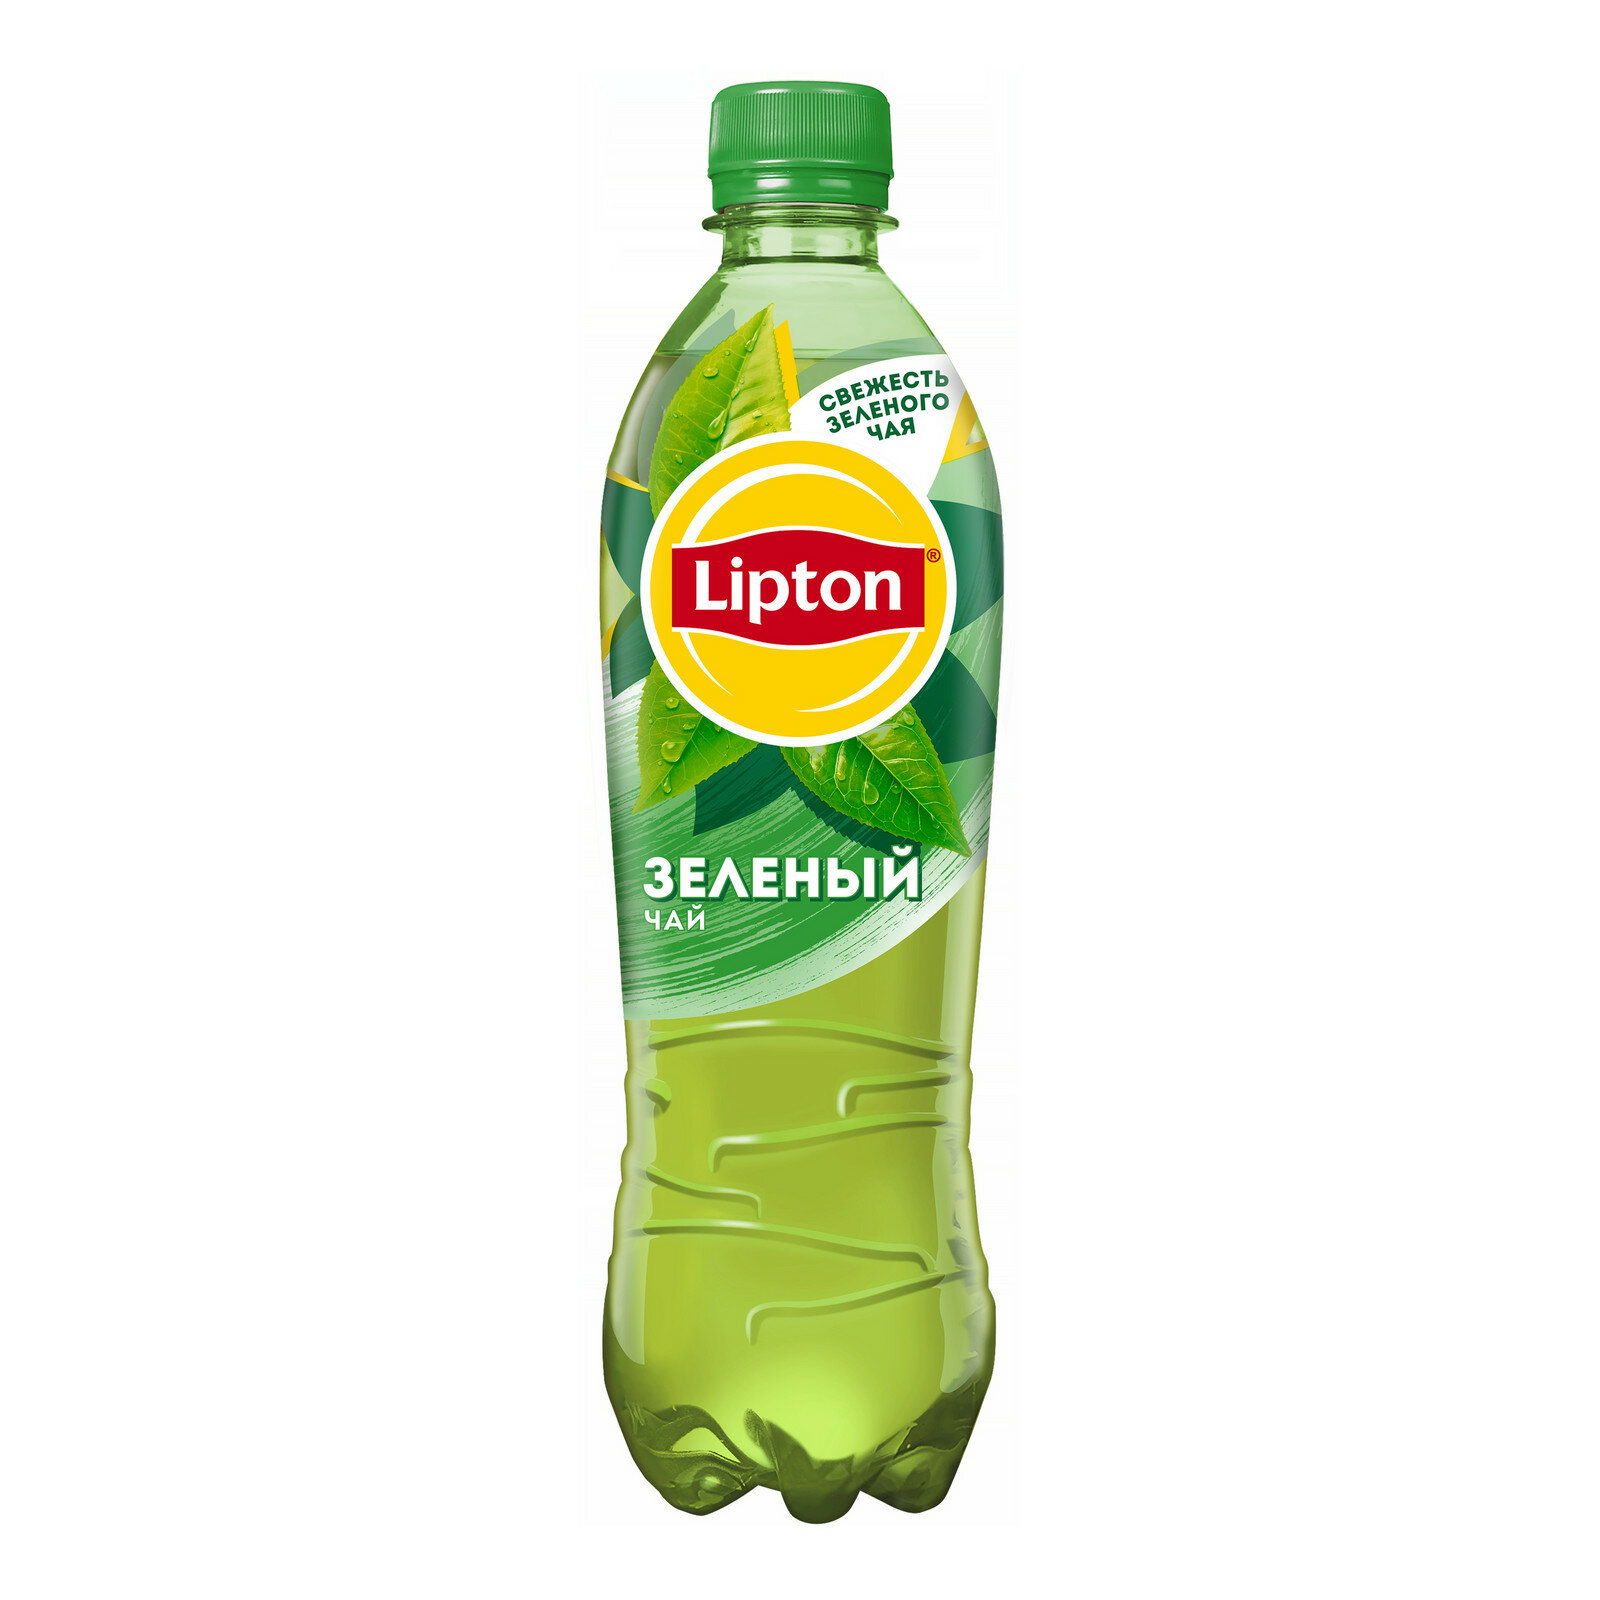 Чай Lipton зеленый, Липтон чай 0.5 л. 12 штук в упаковке